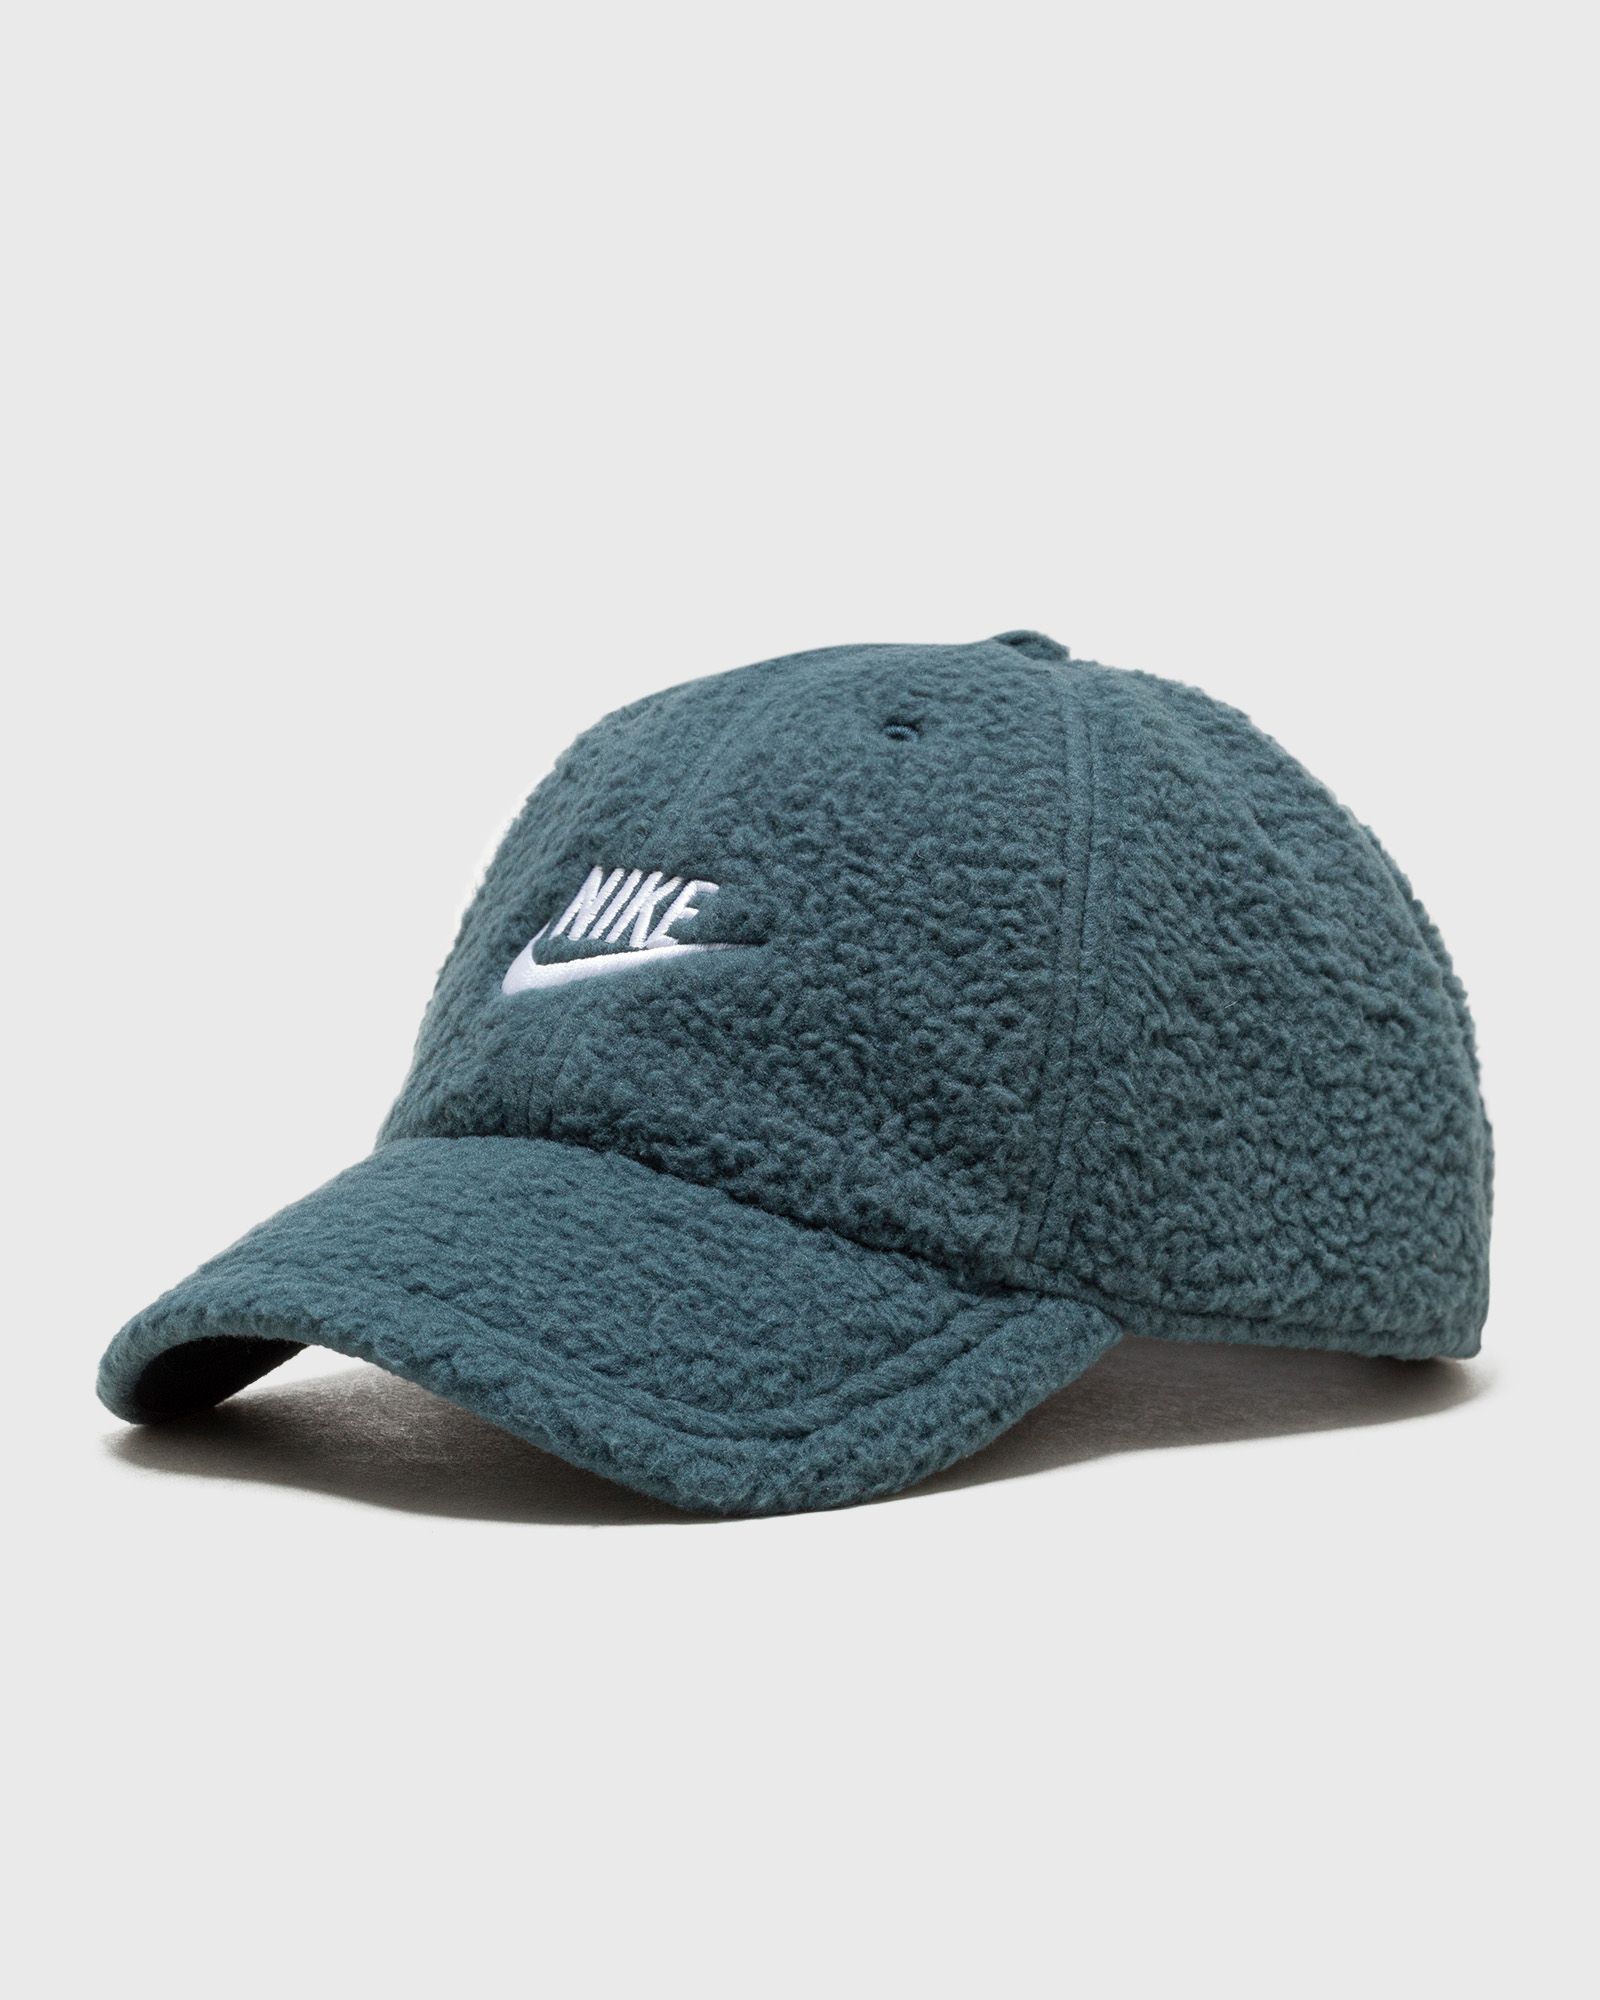 Nike - club cap unstructured curved bill cap men caps green in größe:m/l